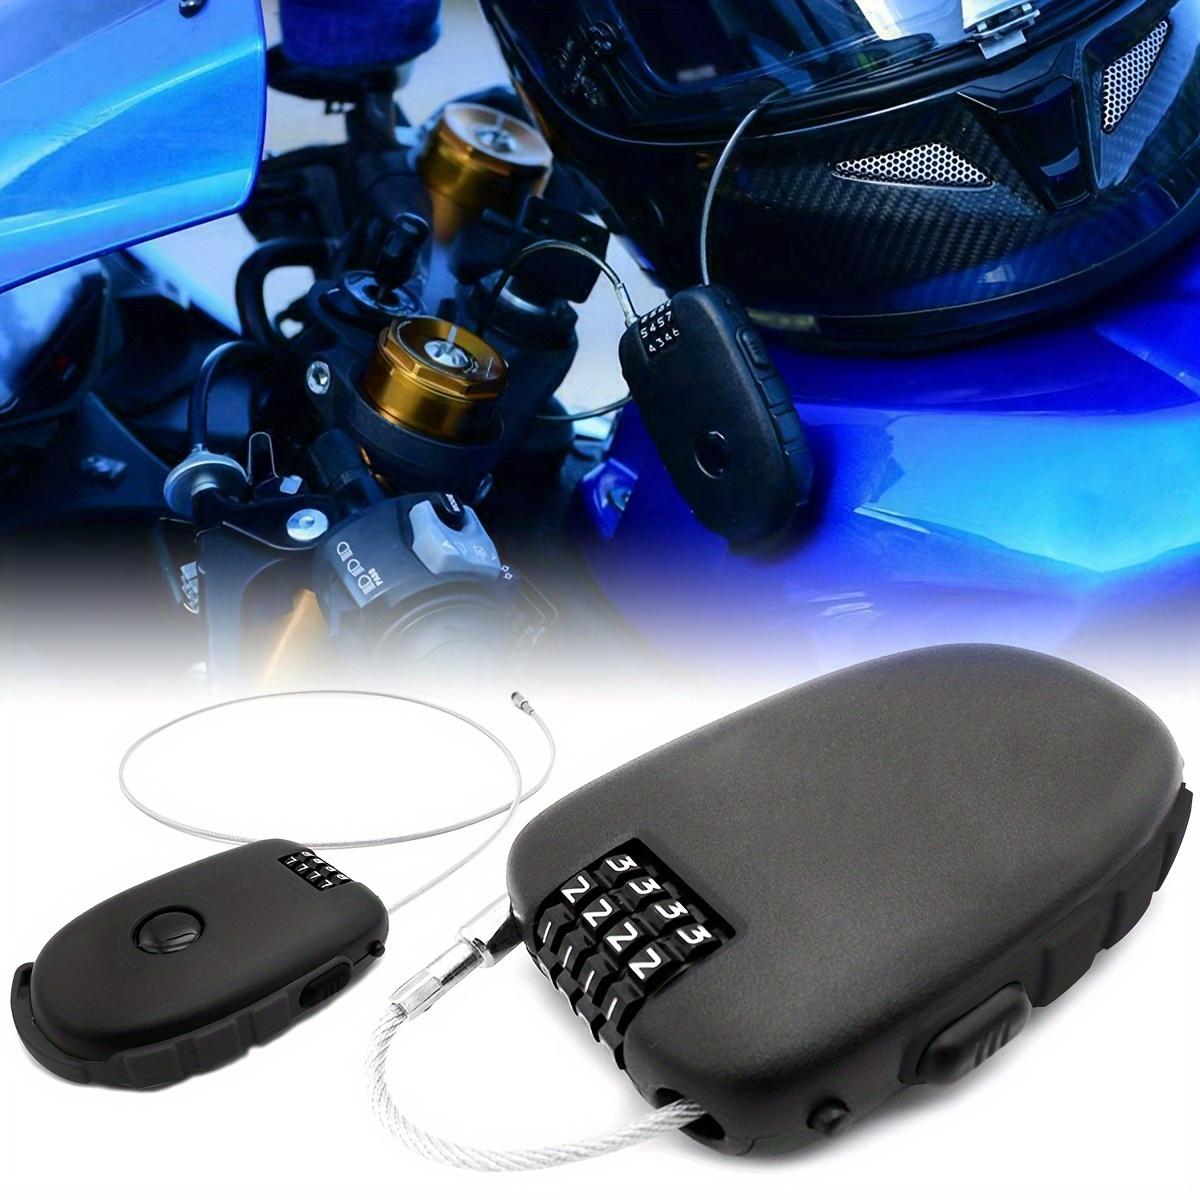 2 candados para casco de motocicleta, candado para casco de bicicleta,  candado de cable pequeño de 4 dígitos, candado retráctil para equipaje,  candado para cochecito, negro